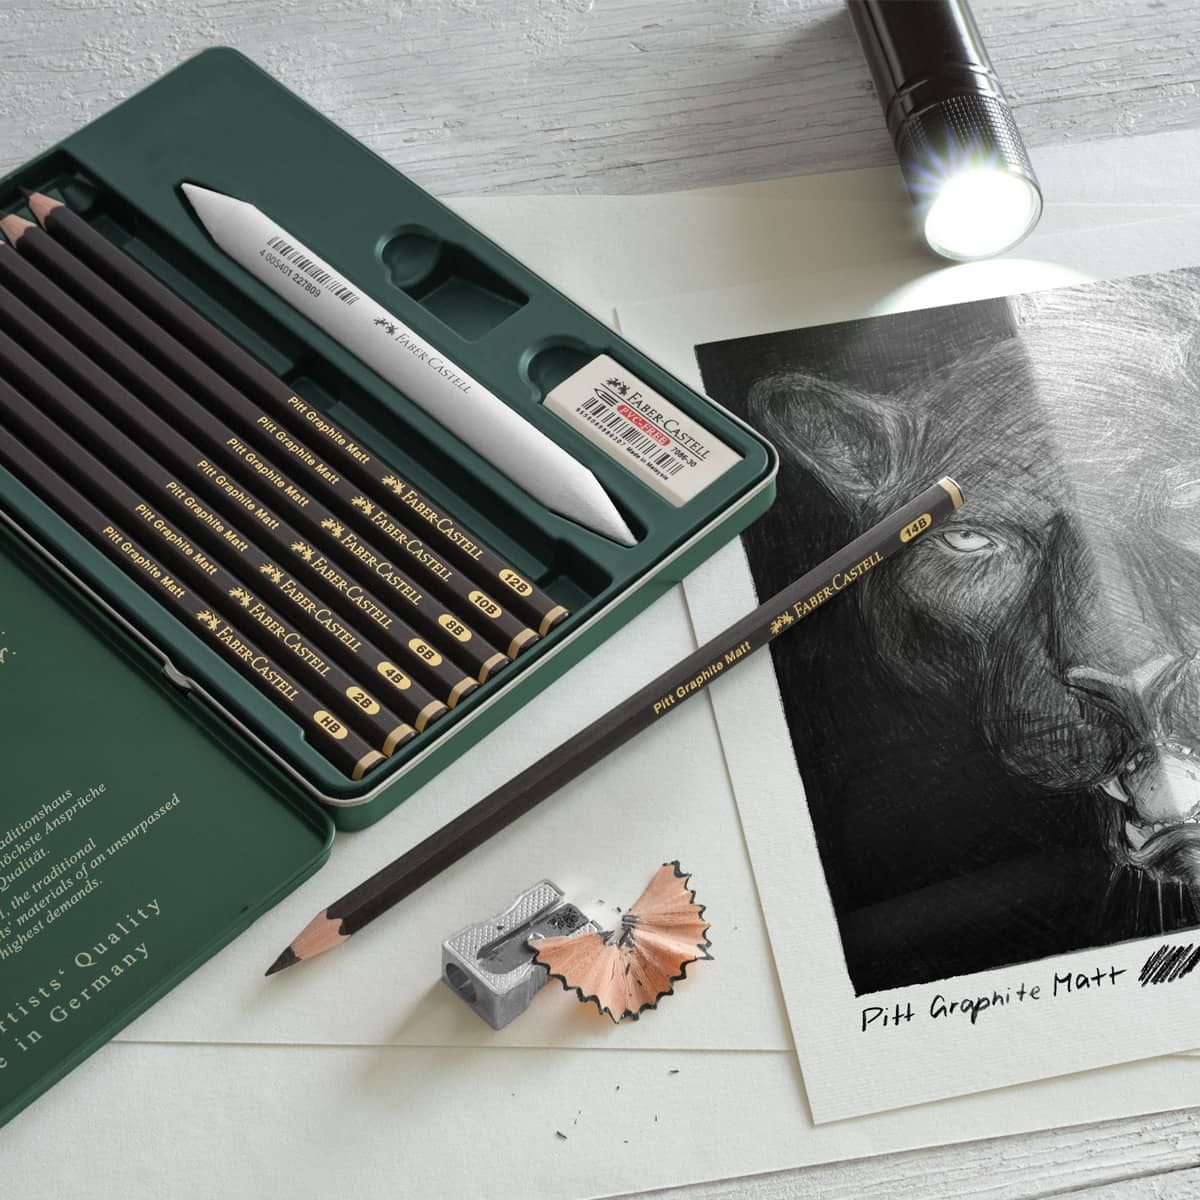 Faber-Castell Pitt Graphite Matt Pencil Set of 11 w/ Accessories